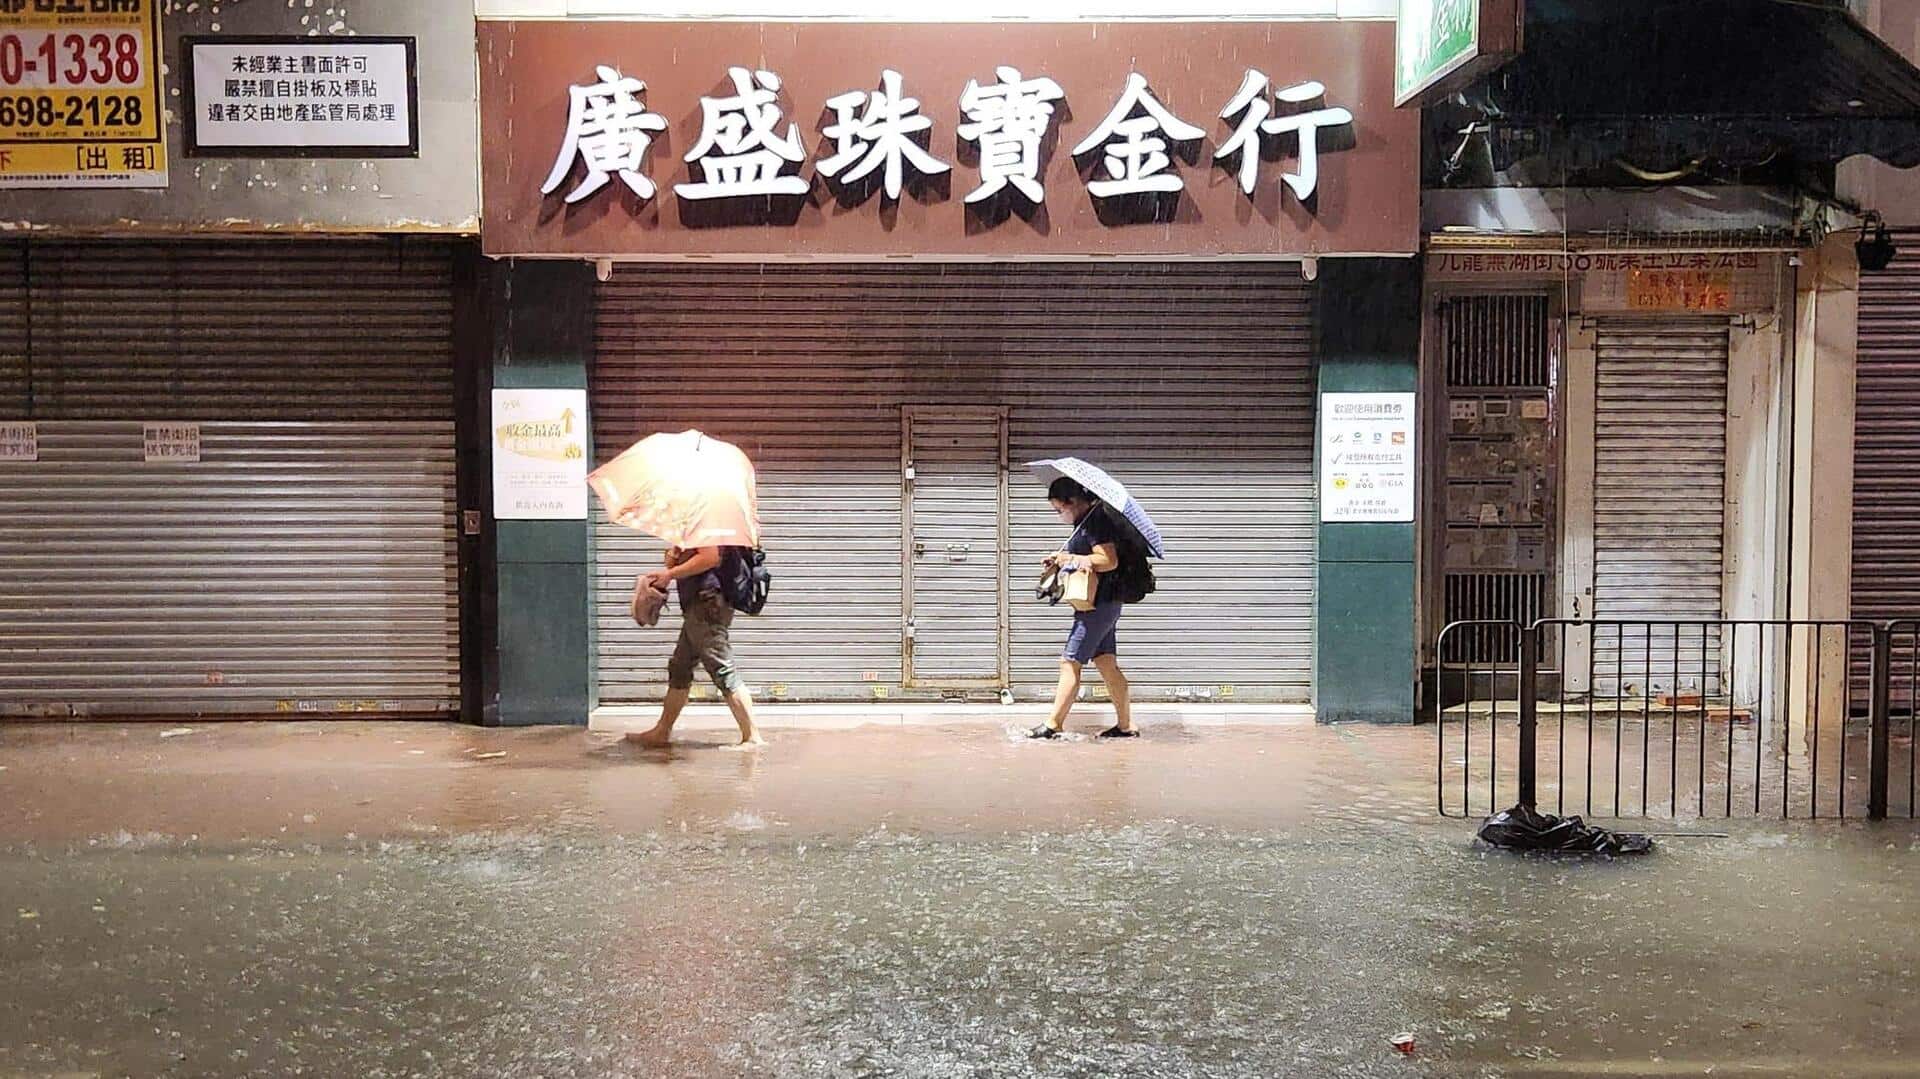 हांगकांग: 140 साल में सबसे अधिक बारिश, मॉल से लेकर मेट्रो तक में भरा पानी